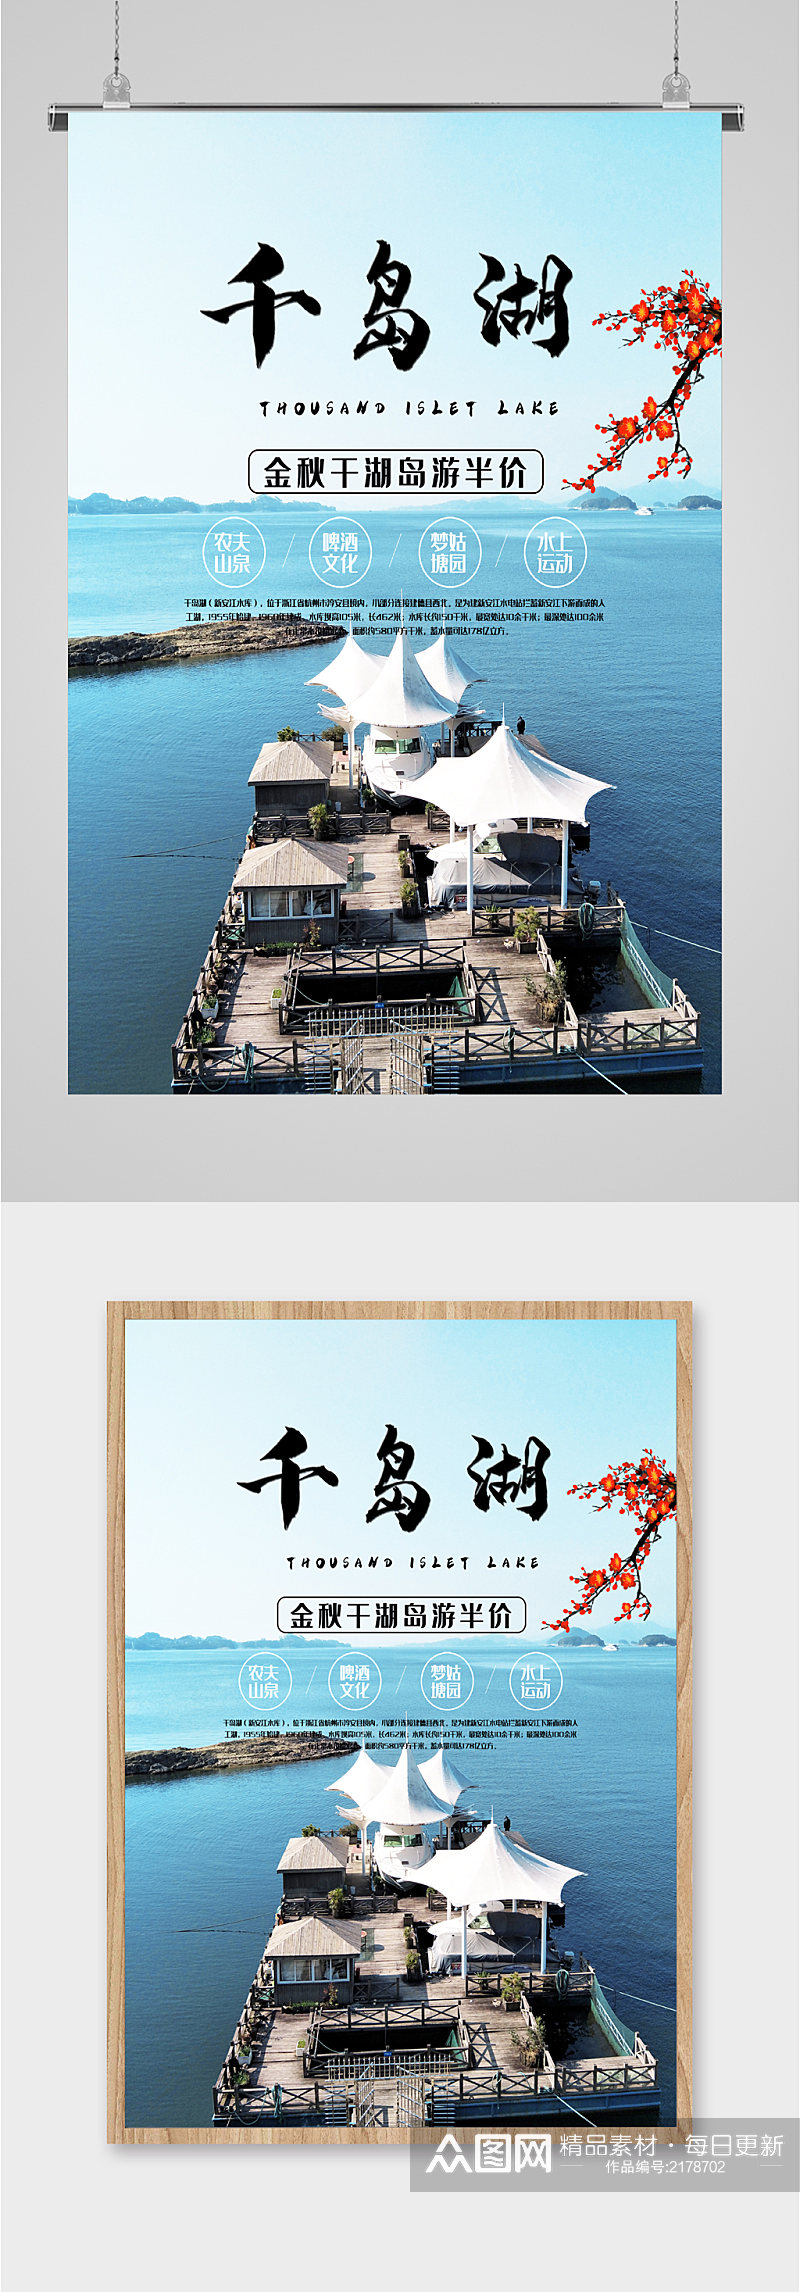 千岛湖特色旅游海报素材